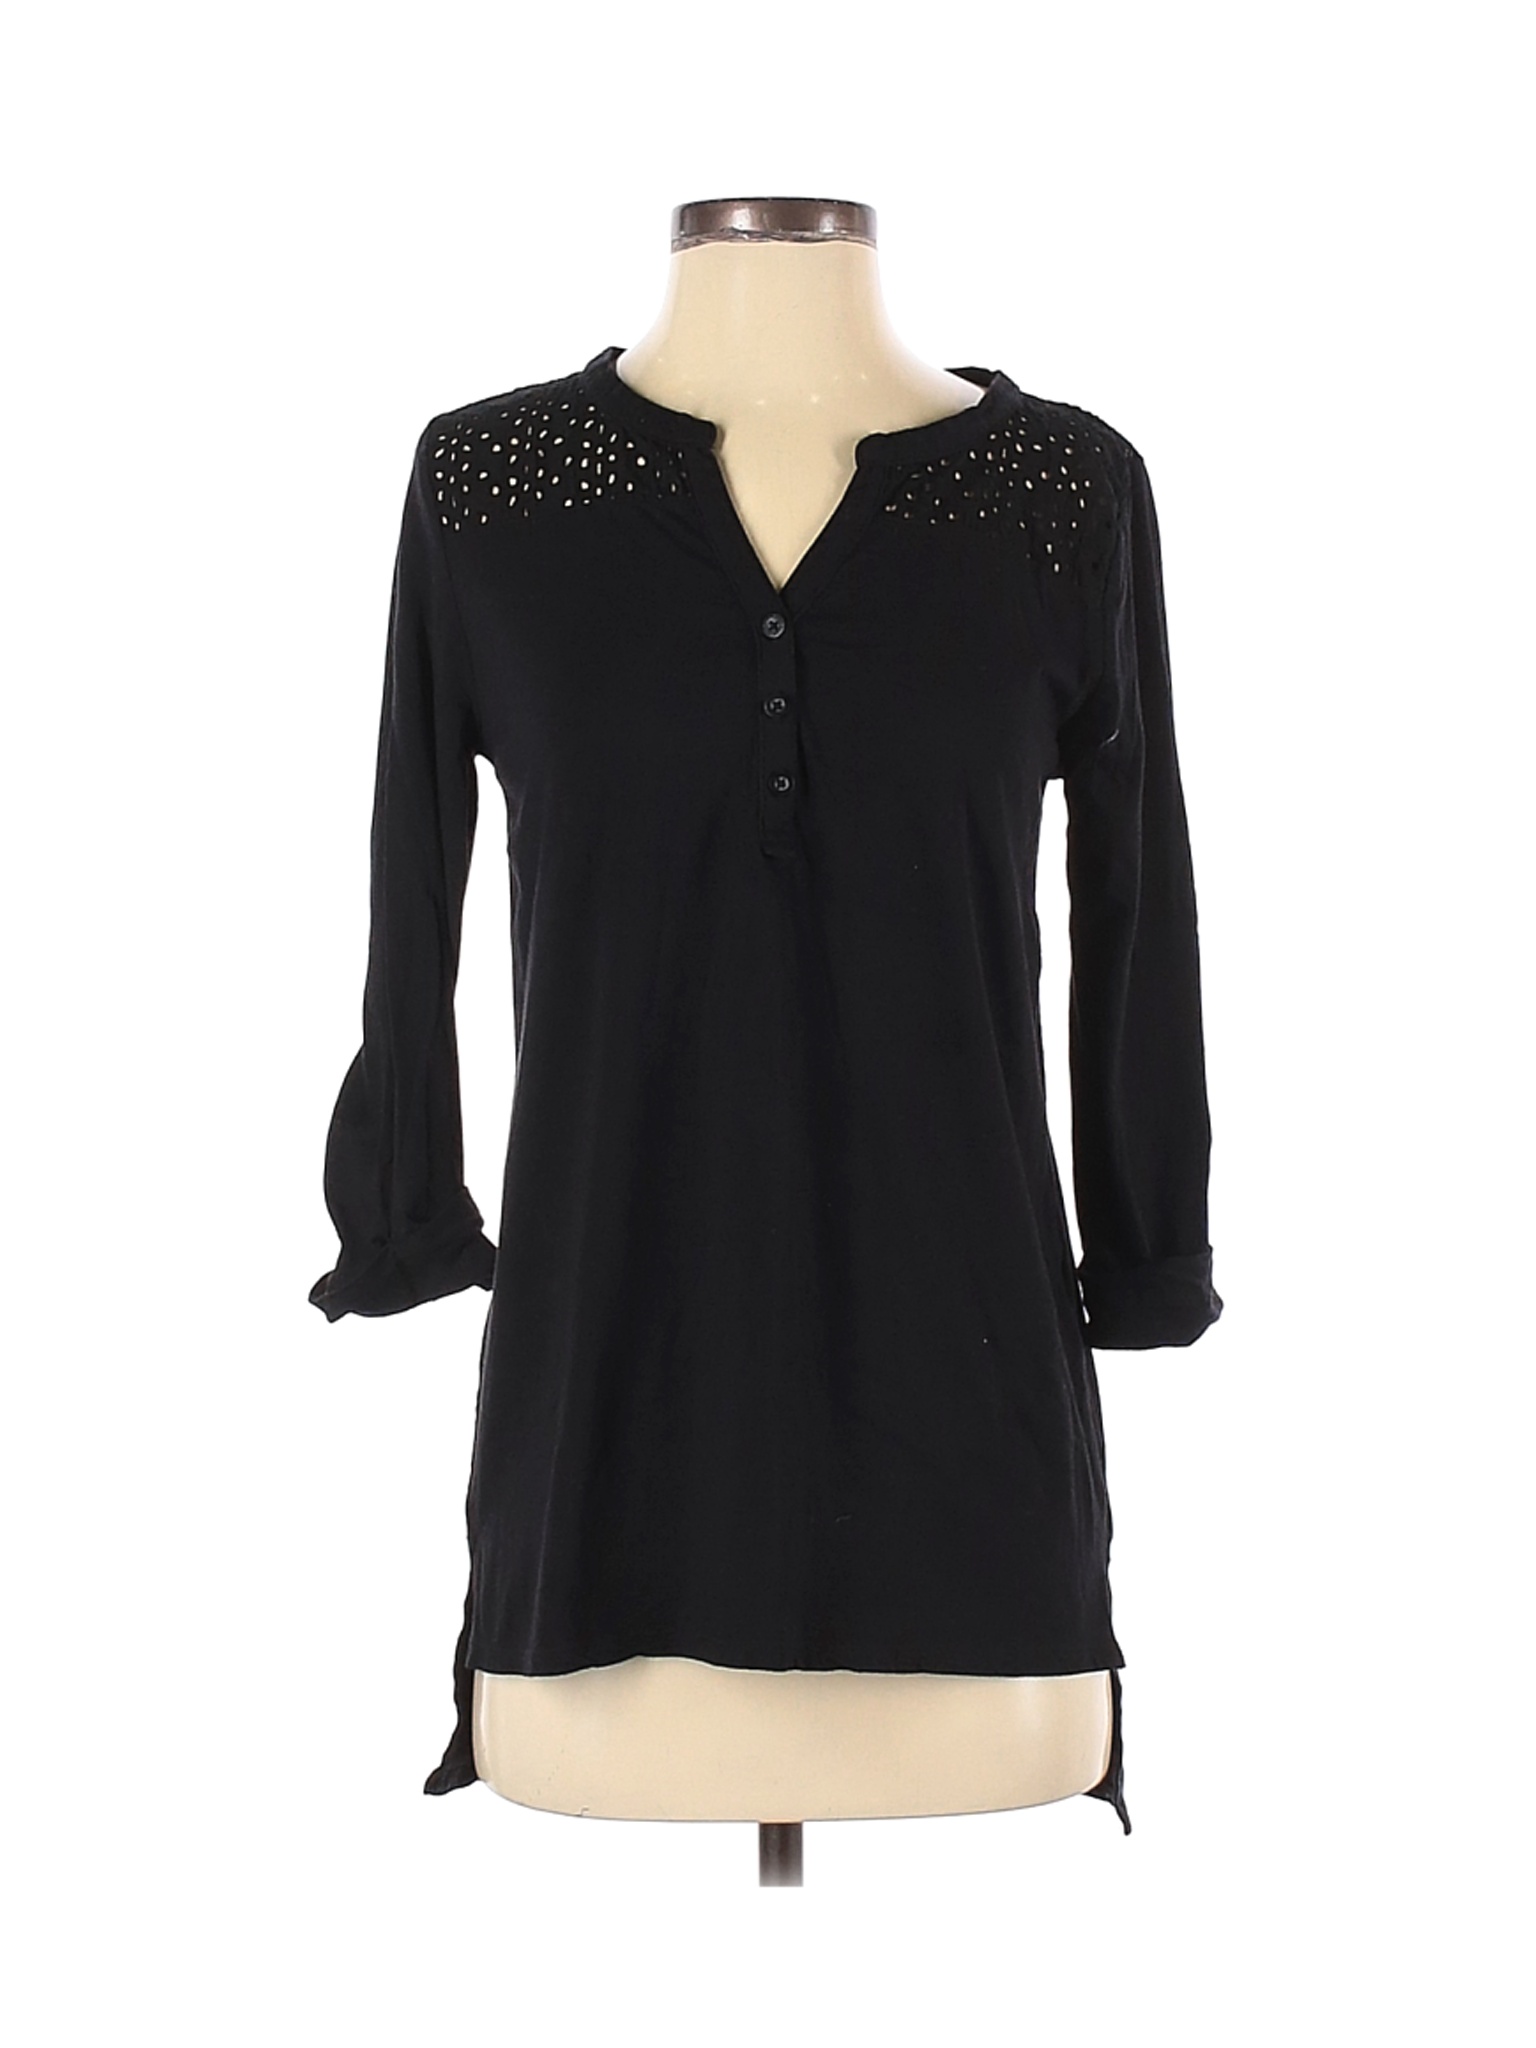 Anne Klein Women Black 3/4 Sleeve Top S | eBay